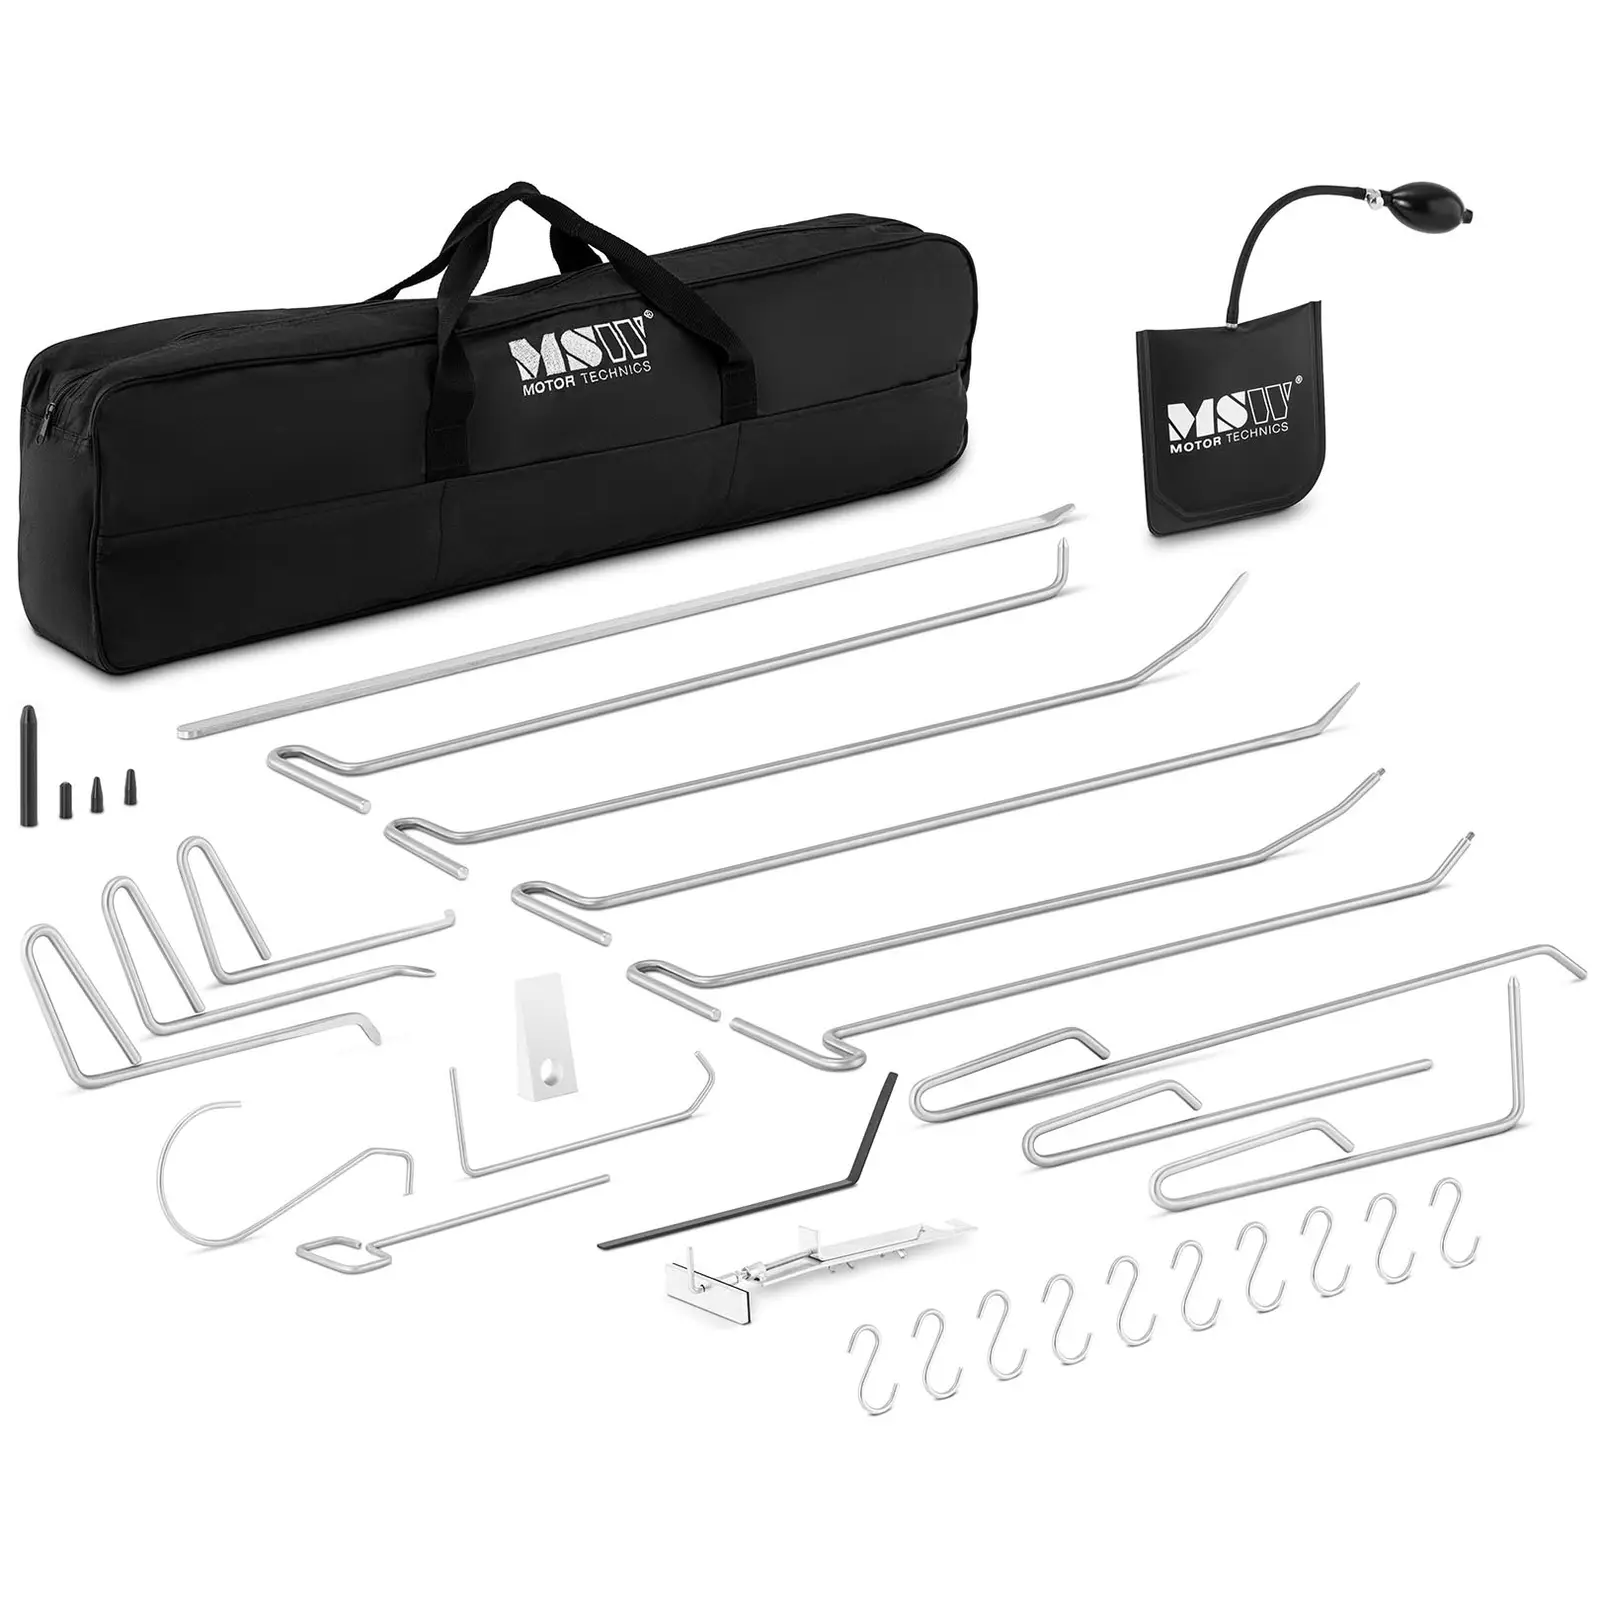 Kit de varillas para reparar abolladuras - 15 varillas + accesorios